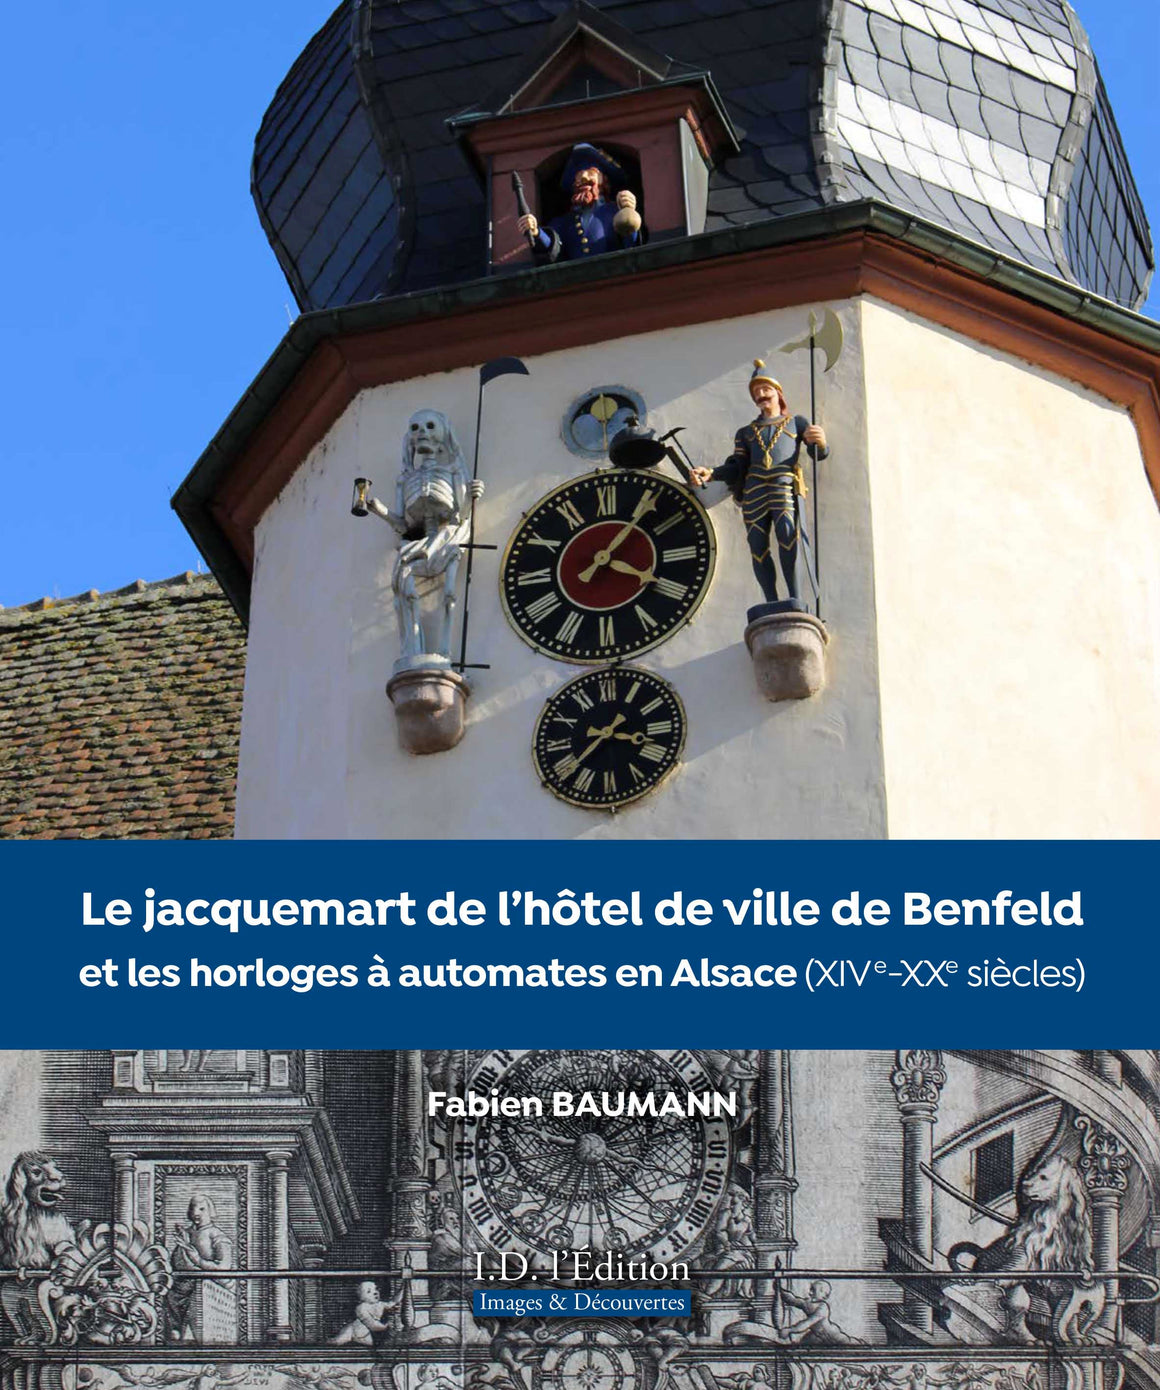 Le jacquemart de l'hôtel de ville de Benfeld et les horloges à automates en Alsace